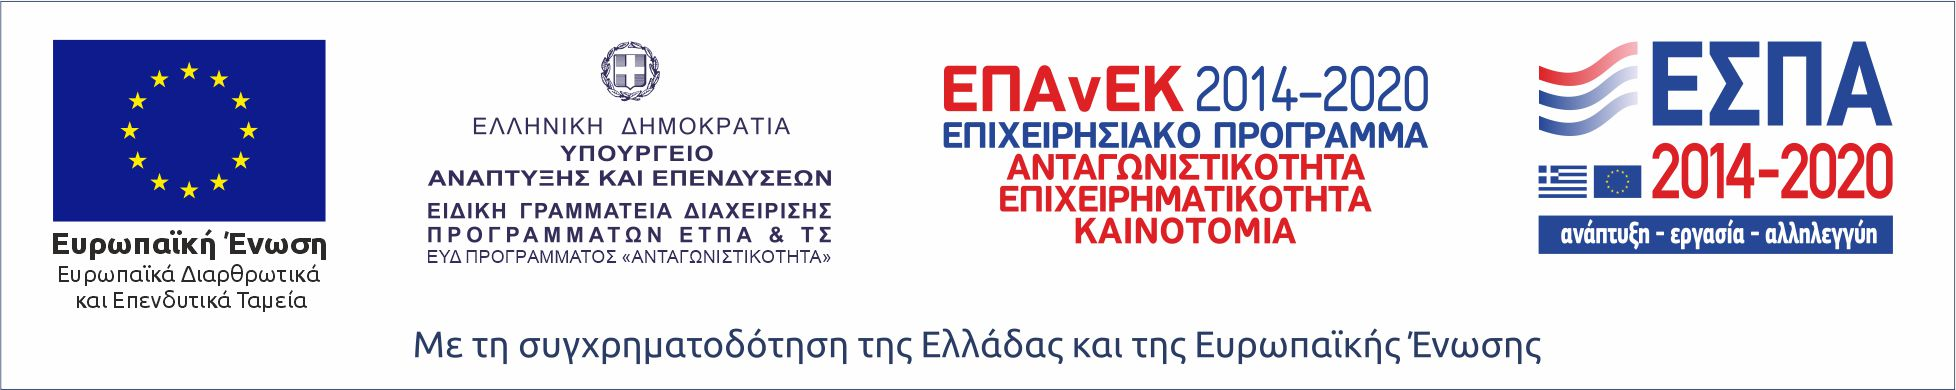 ΕΣΠΑ 2014-2020 ΕΠΑνΕΚ 2014-2020